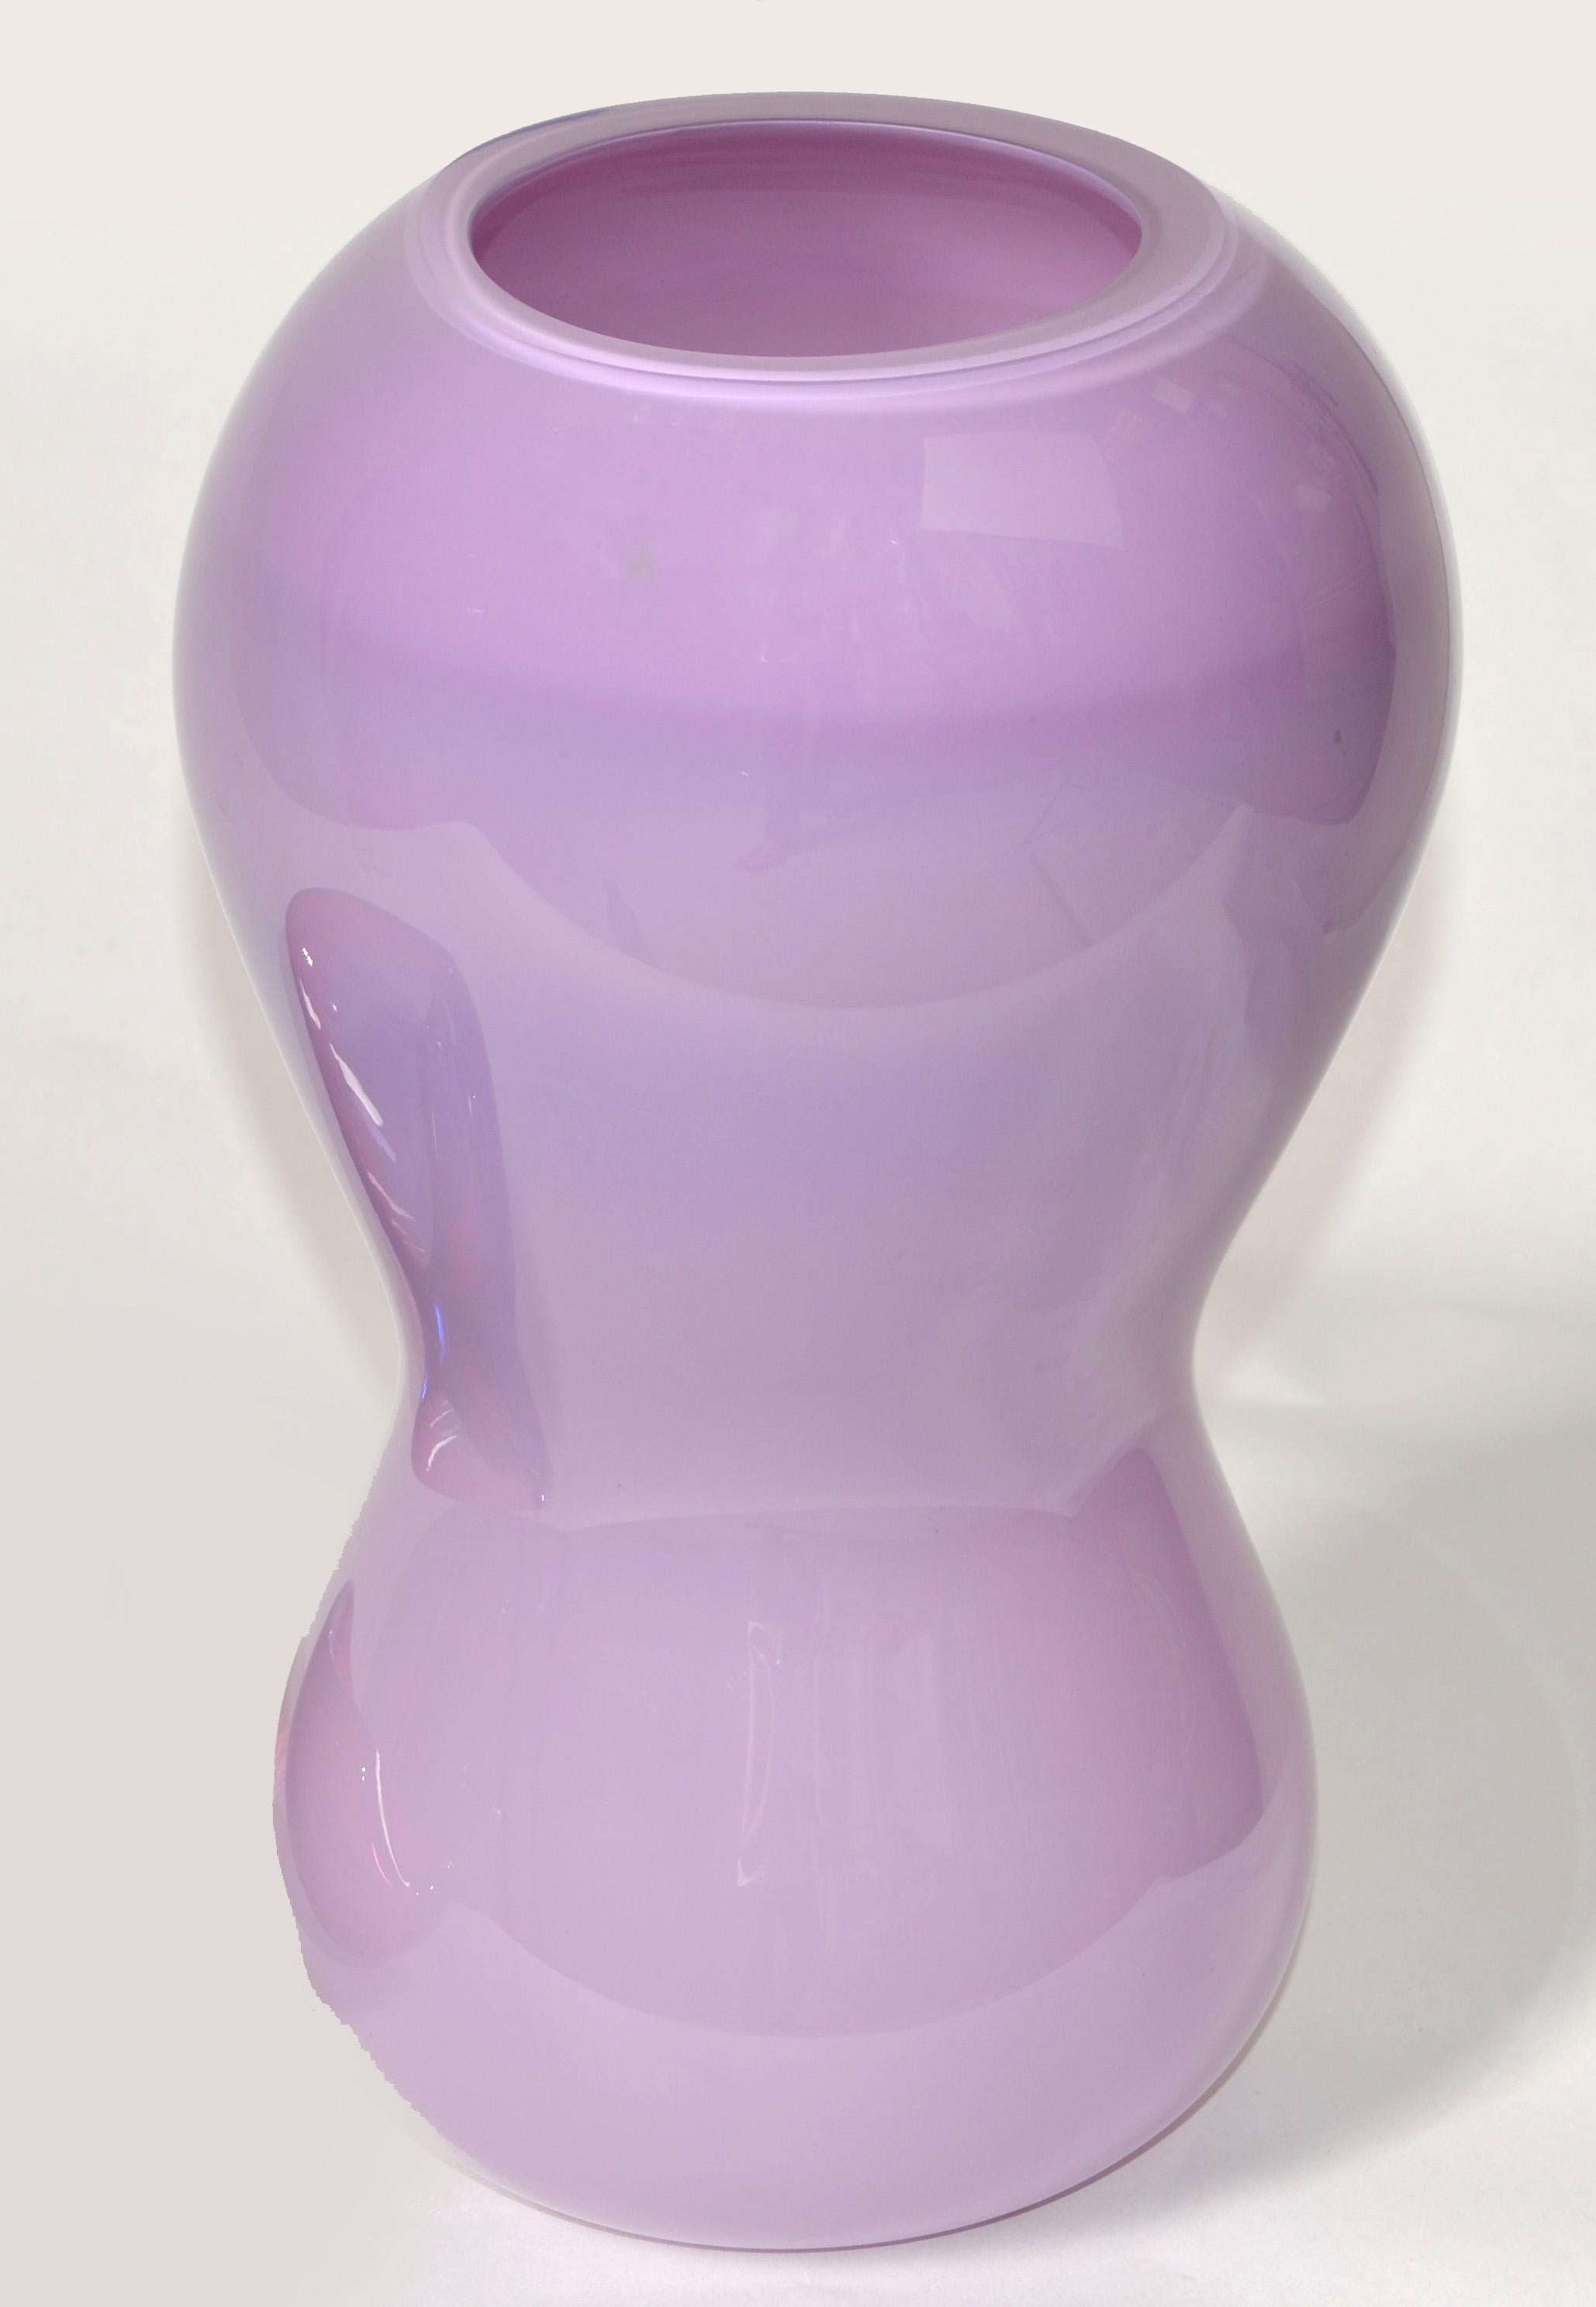 1992 Nigel Coates England Modern Encased Lavender Art Glass Vase Salvati Italy   For Sale 5